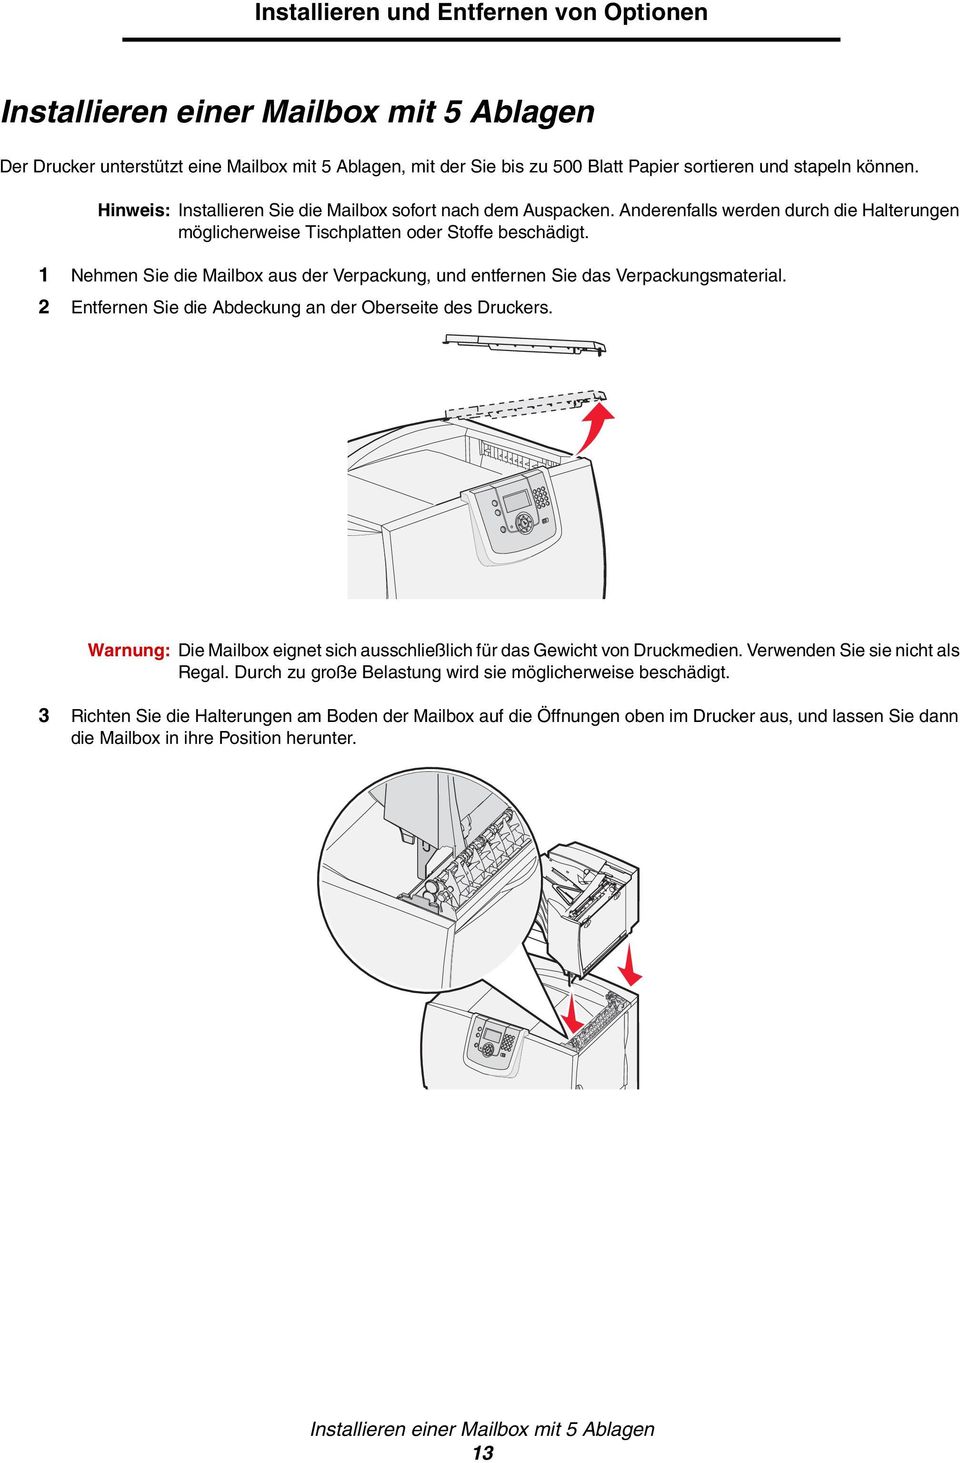 1 Nehmen Sie die Mailbox aus der Verpackung, und entfernen Sie das Verpackungsmaterial. 2 Entfernen Sie die Abdeckung an der Oberseite des Druckers.